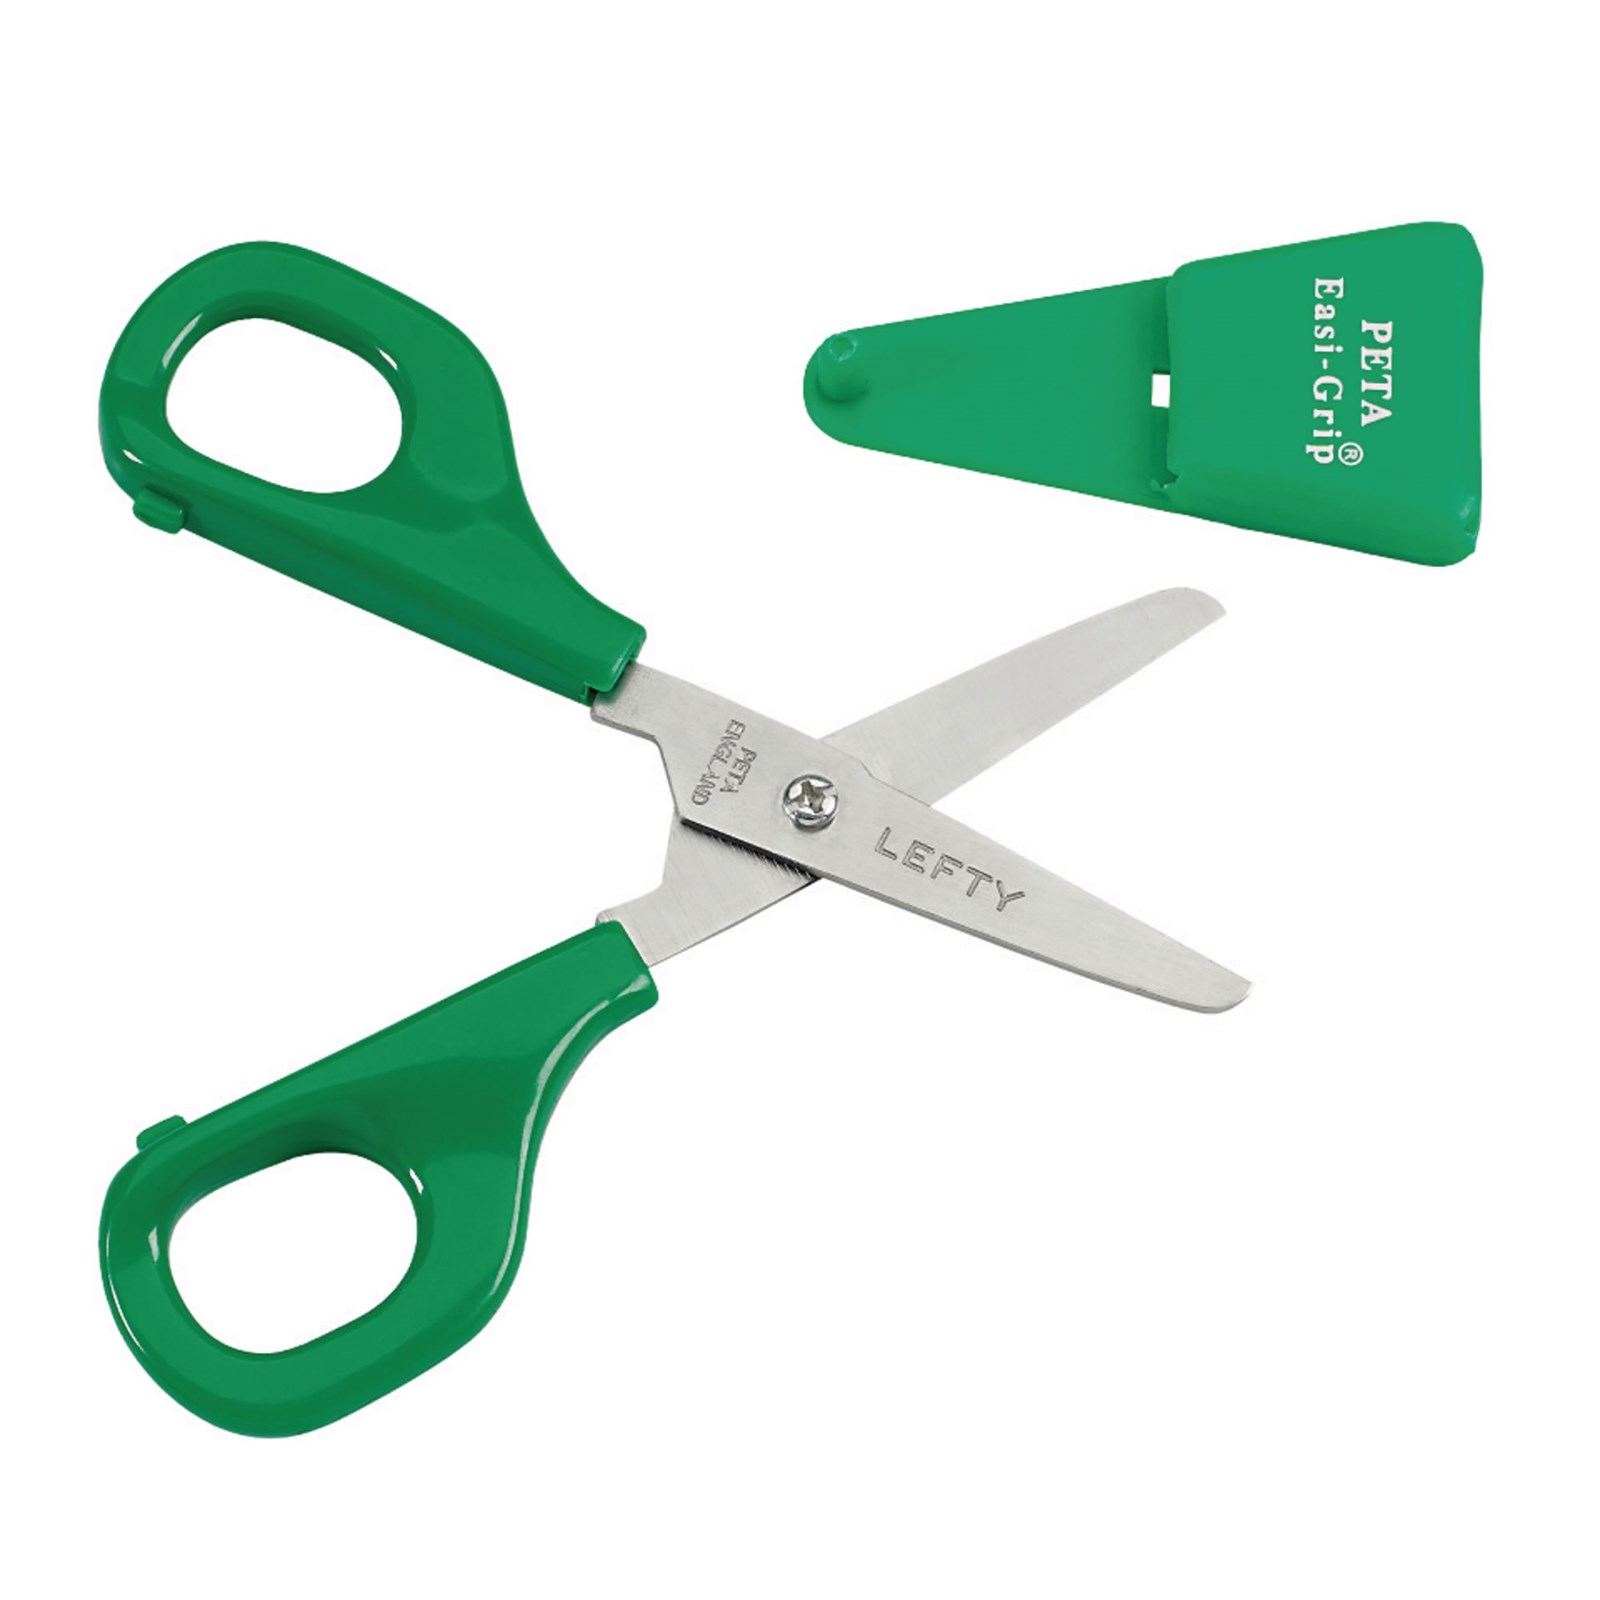 Self-opening Scissors - Left-handed | LDA Resources